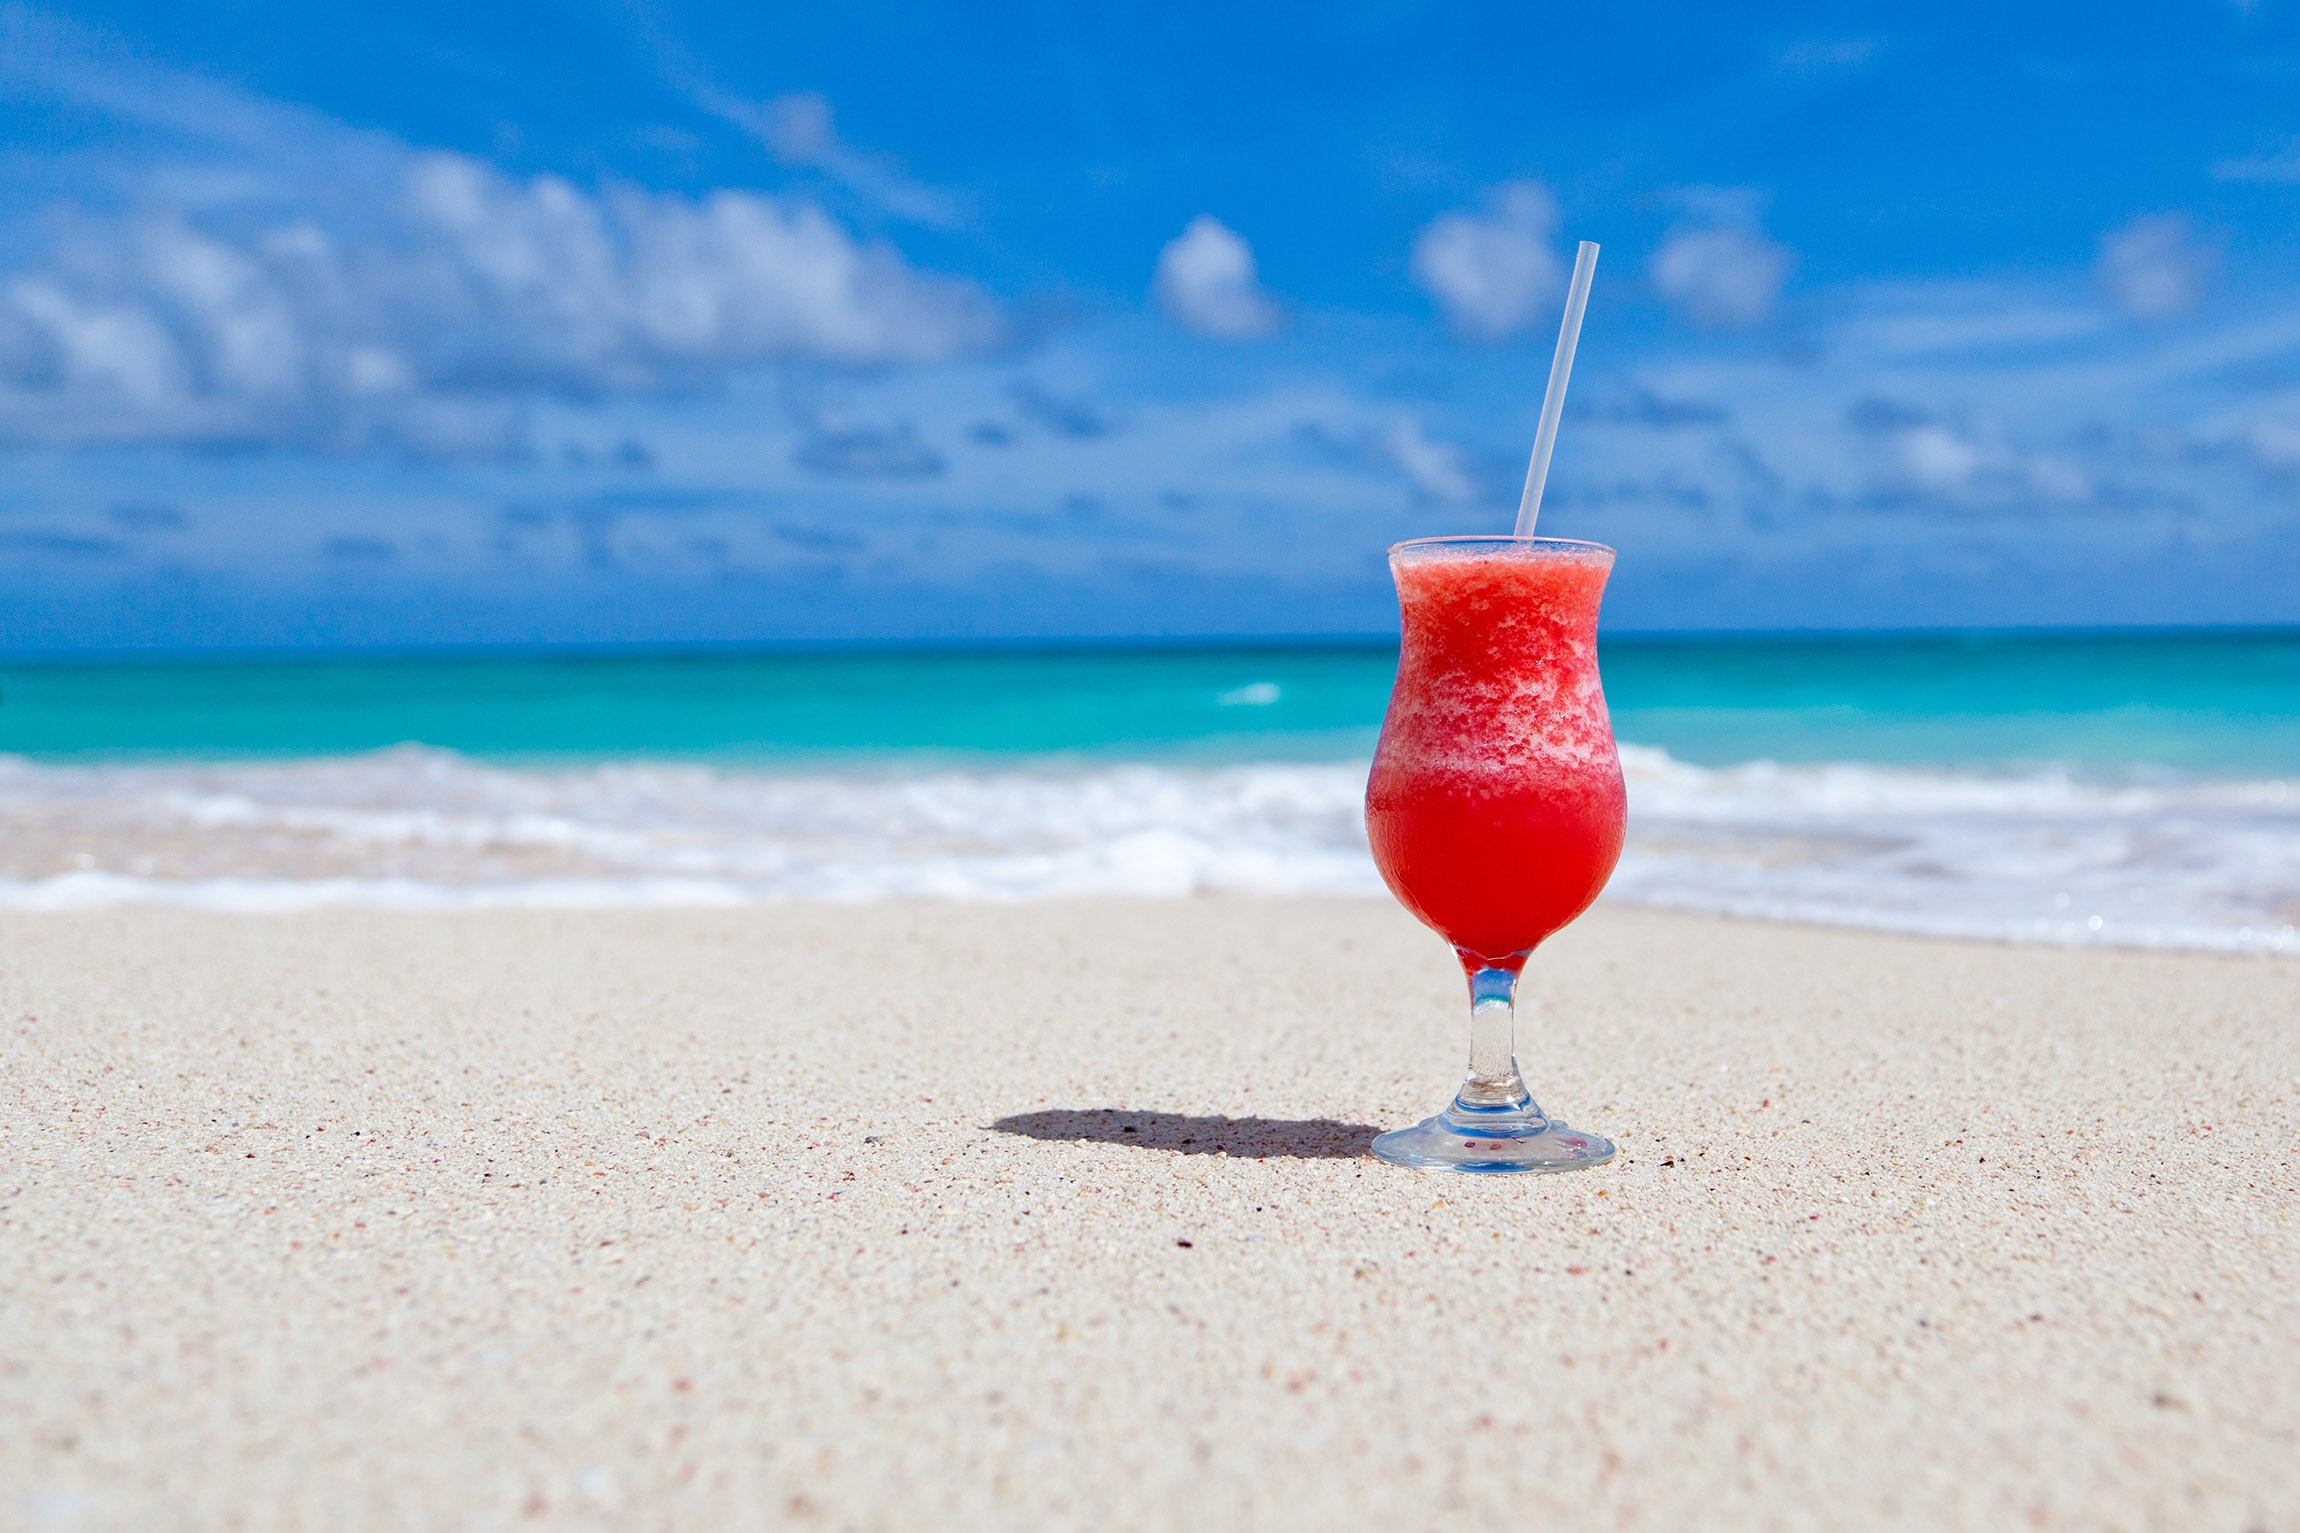 Drink on a sandy beach